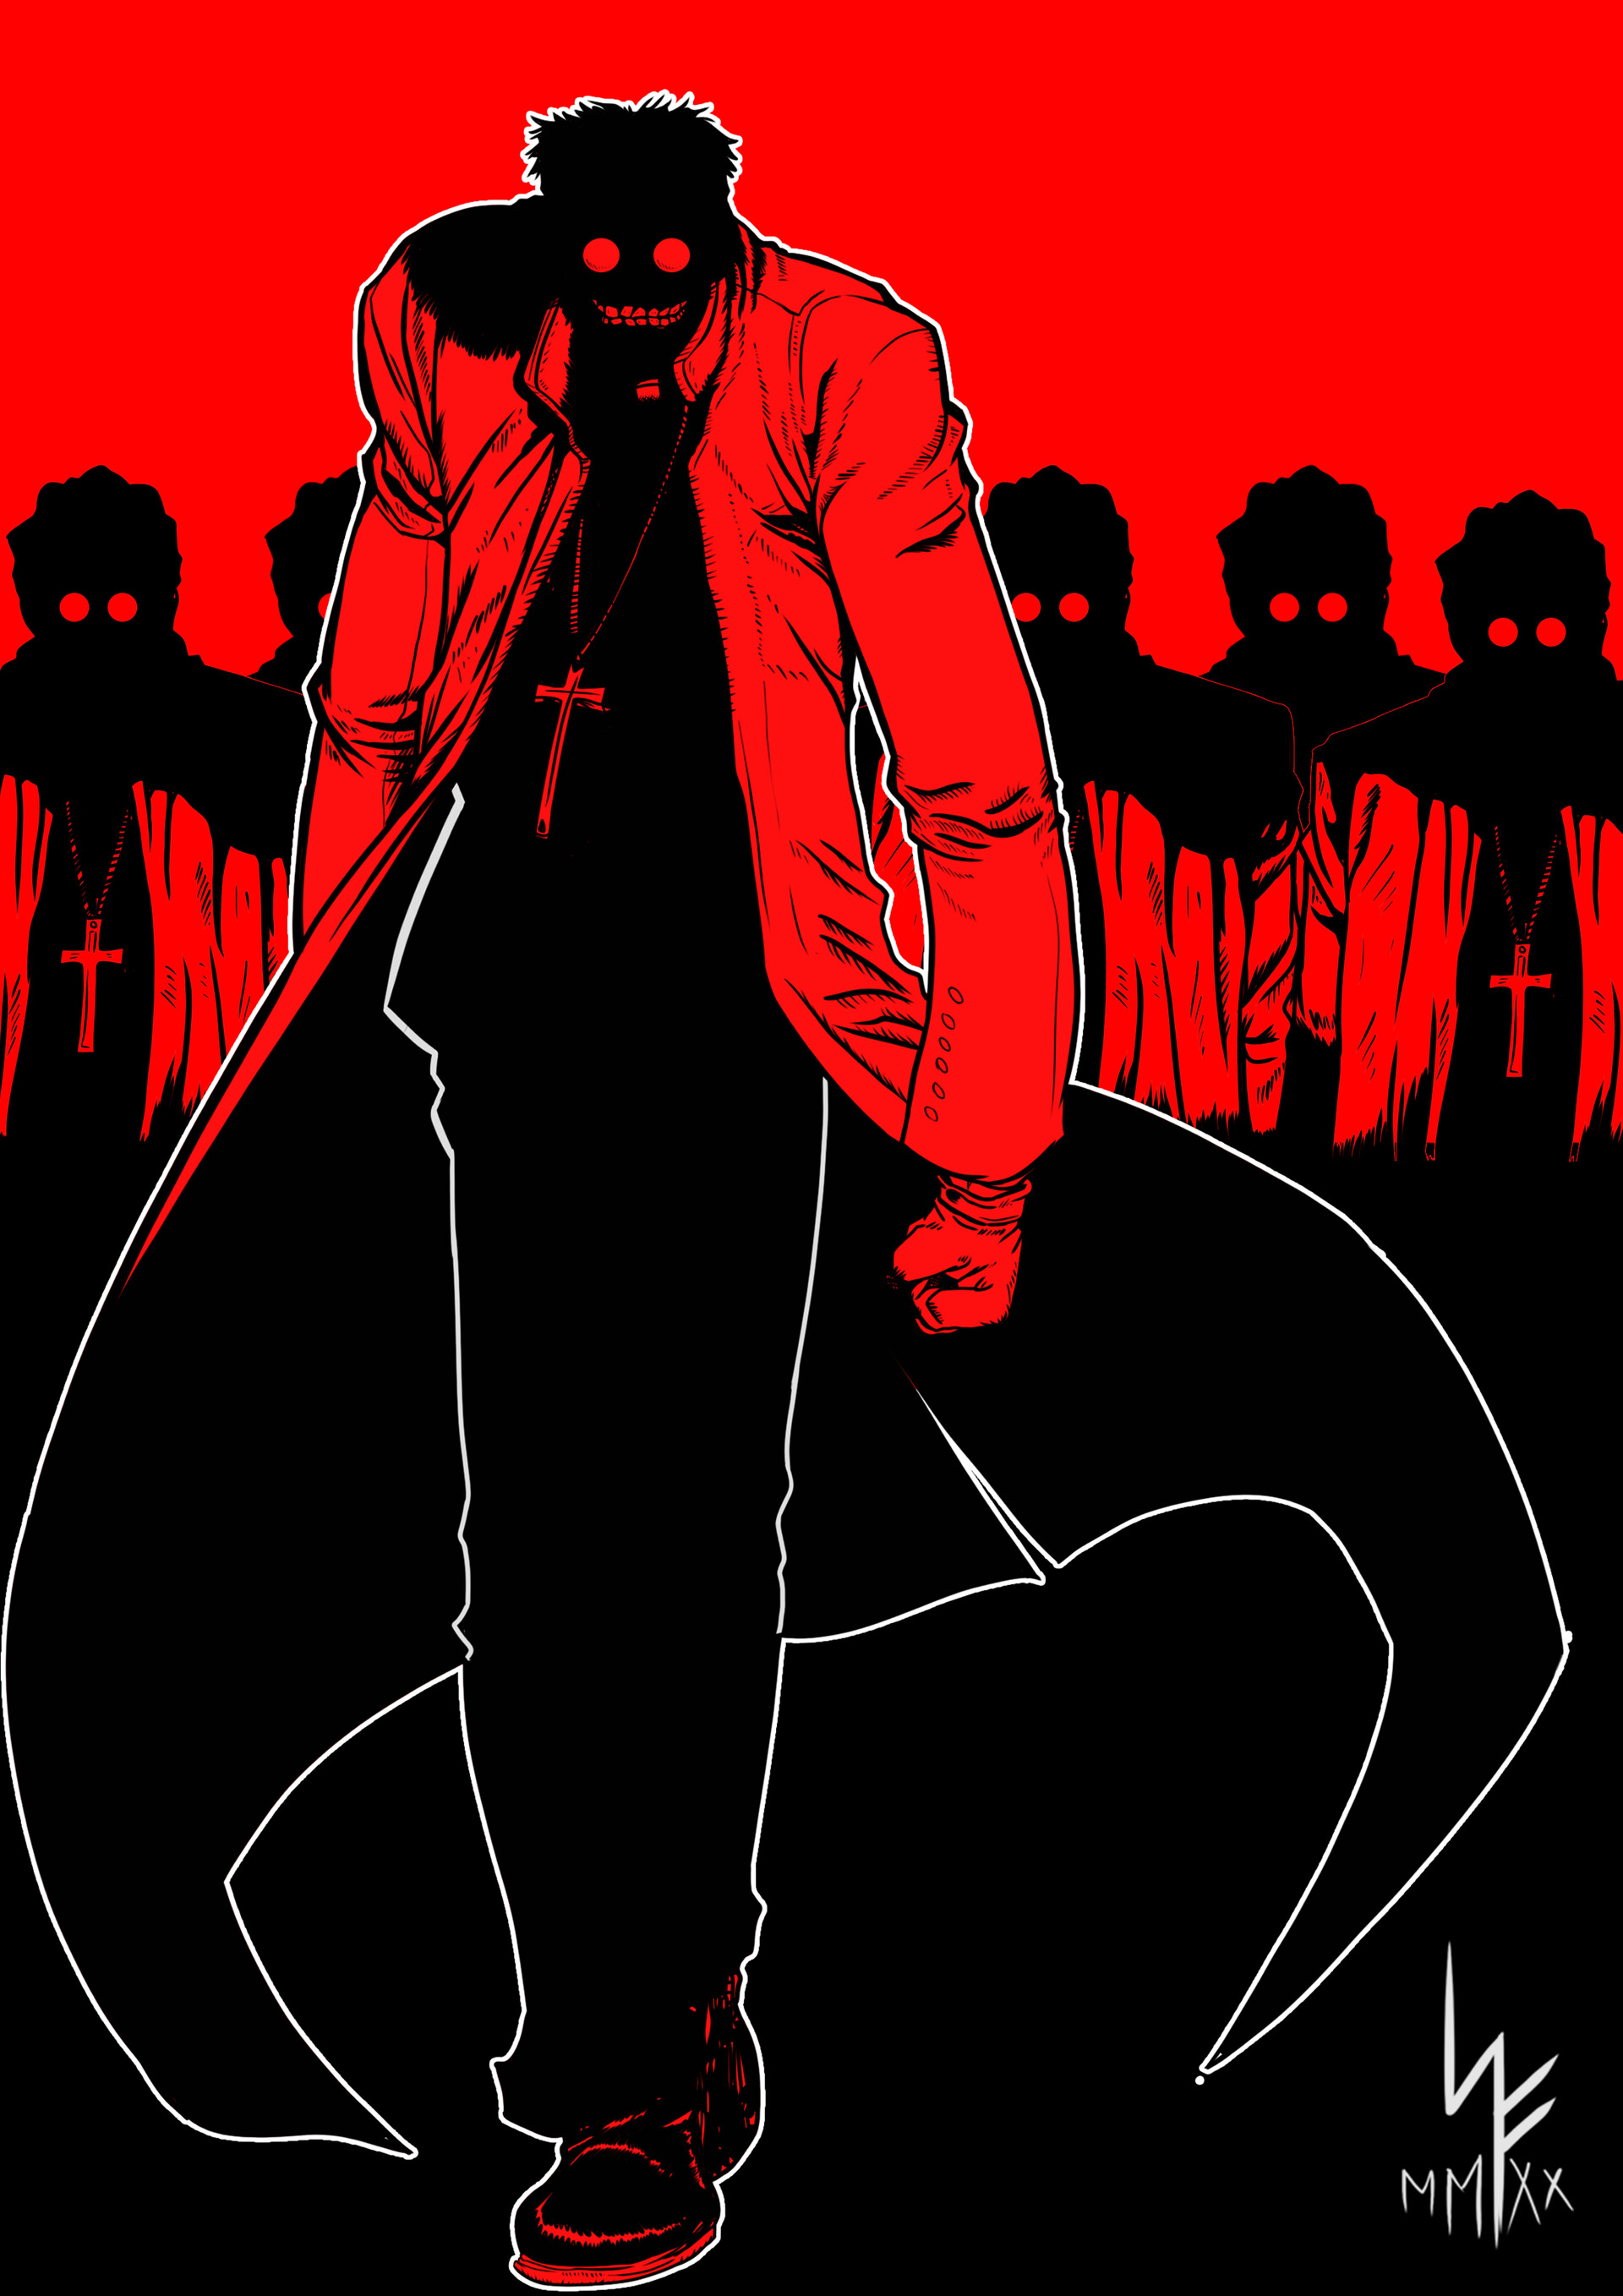 Anime 1920x2716 Hellsing Hellsing Ultimate Alexander Anderson black red portrait display watermarked minimalism anime men cross smiling glasses